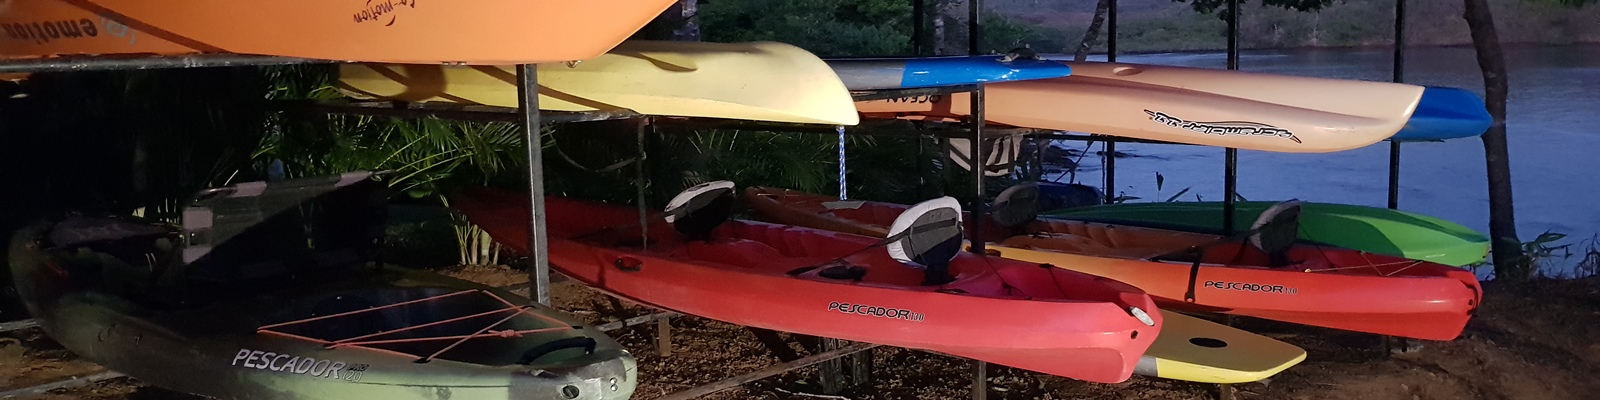 alquiler de kayak sencillo o doble